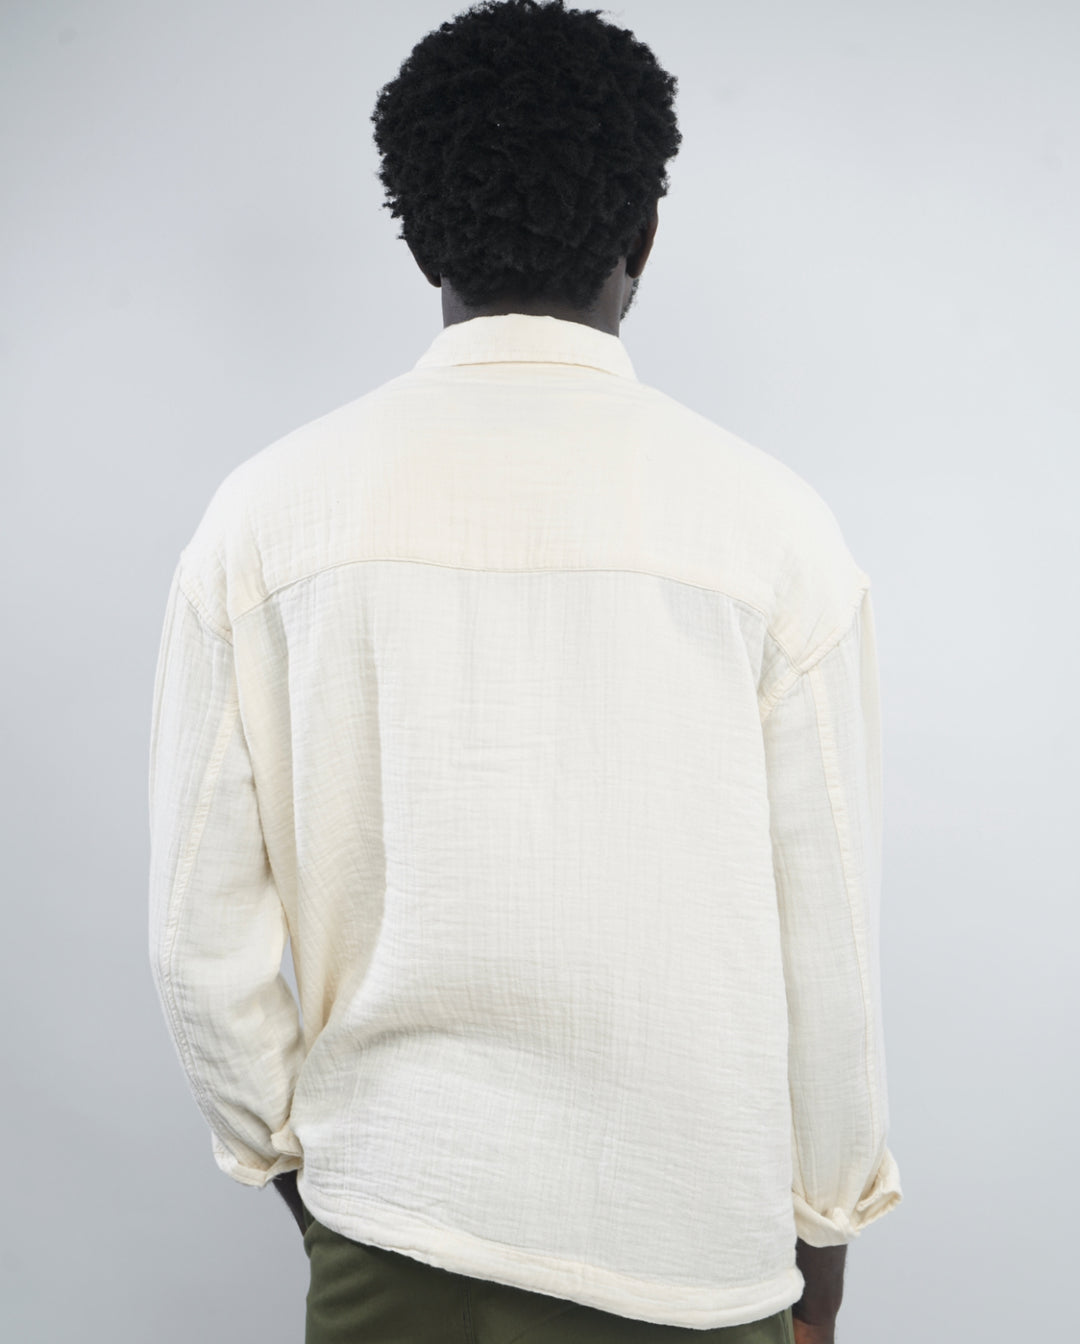 GIESTO linen spring shirt in off white